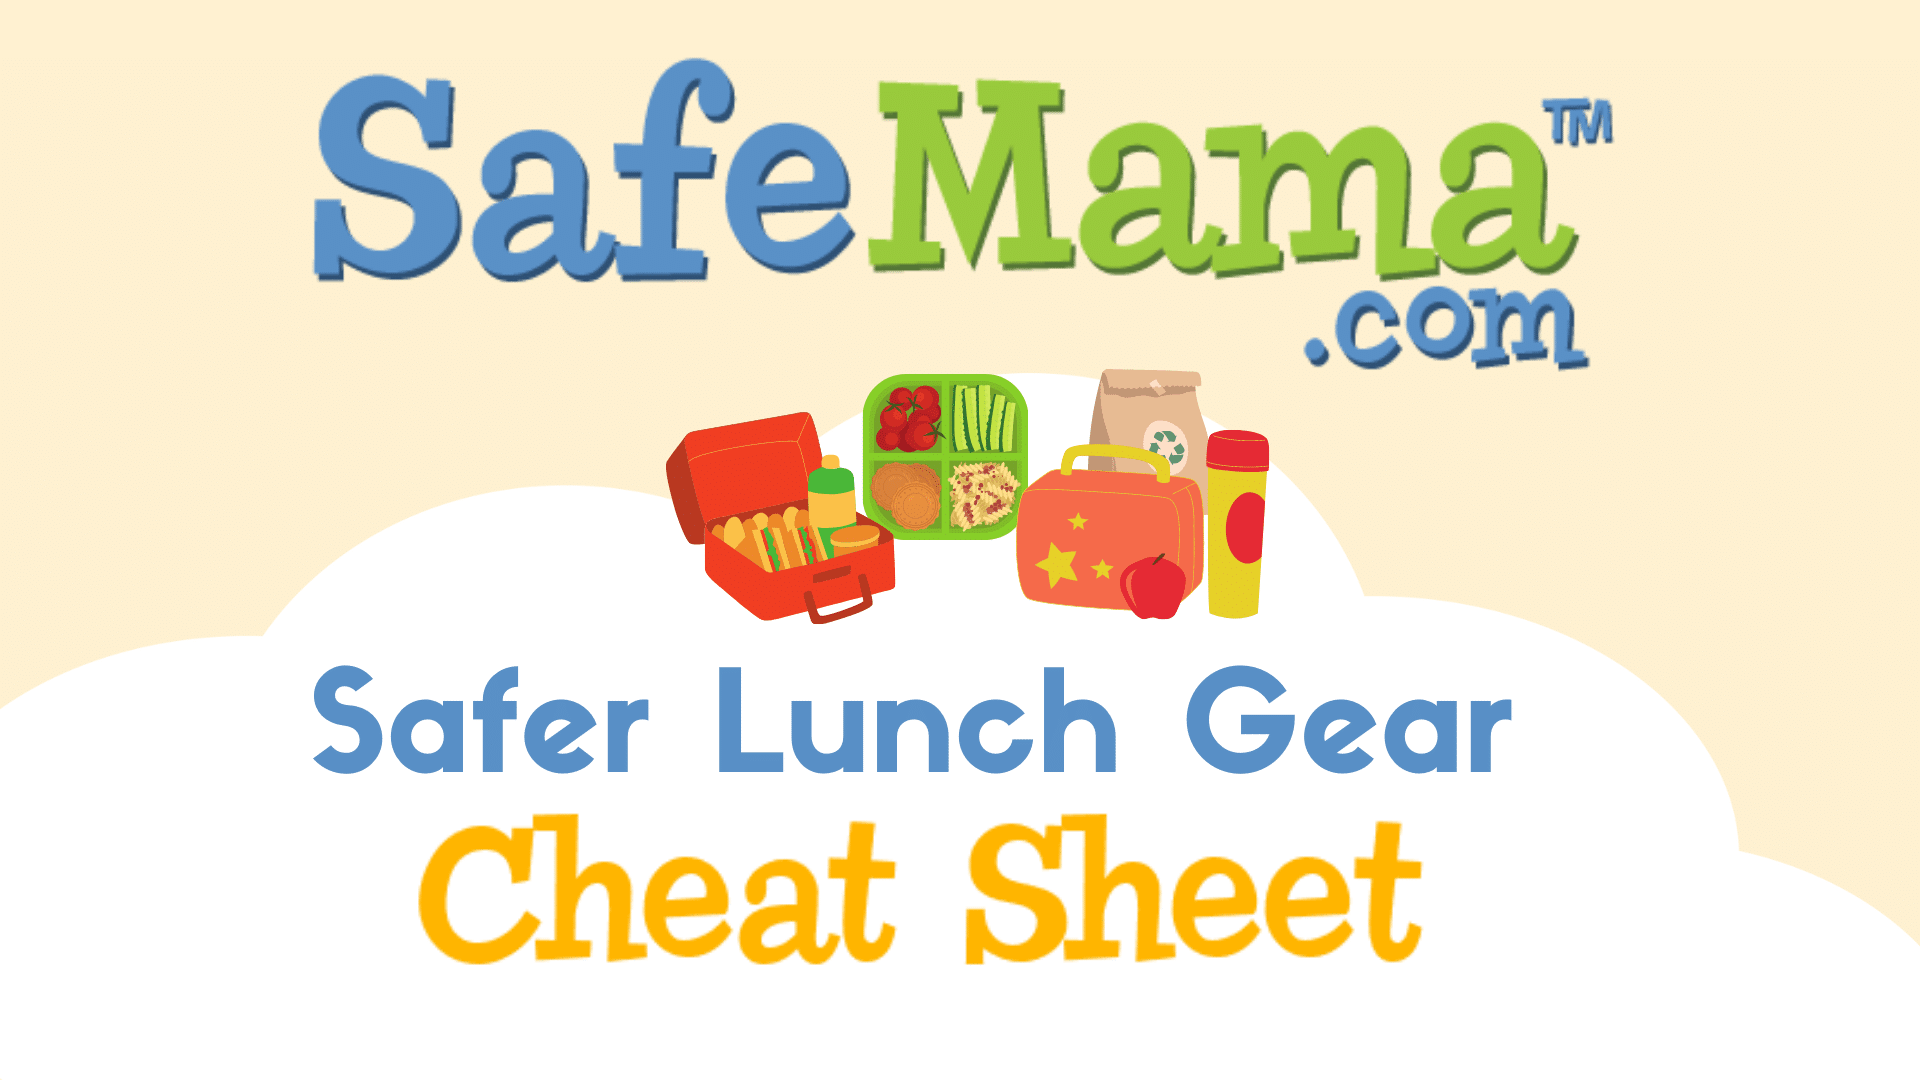 Safer Lunch Gear